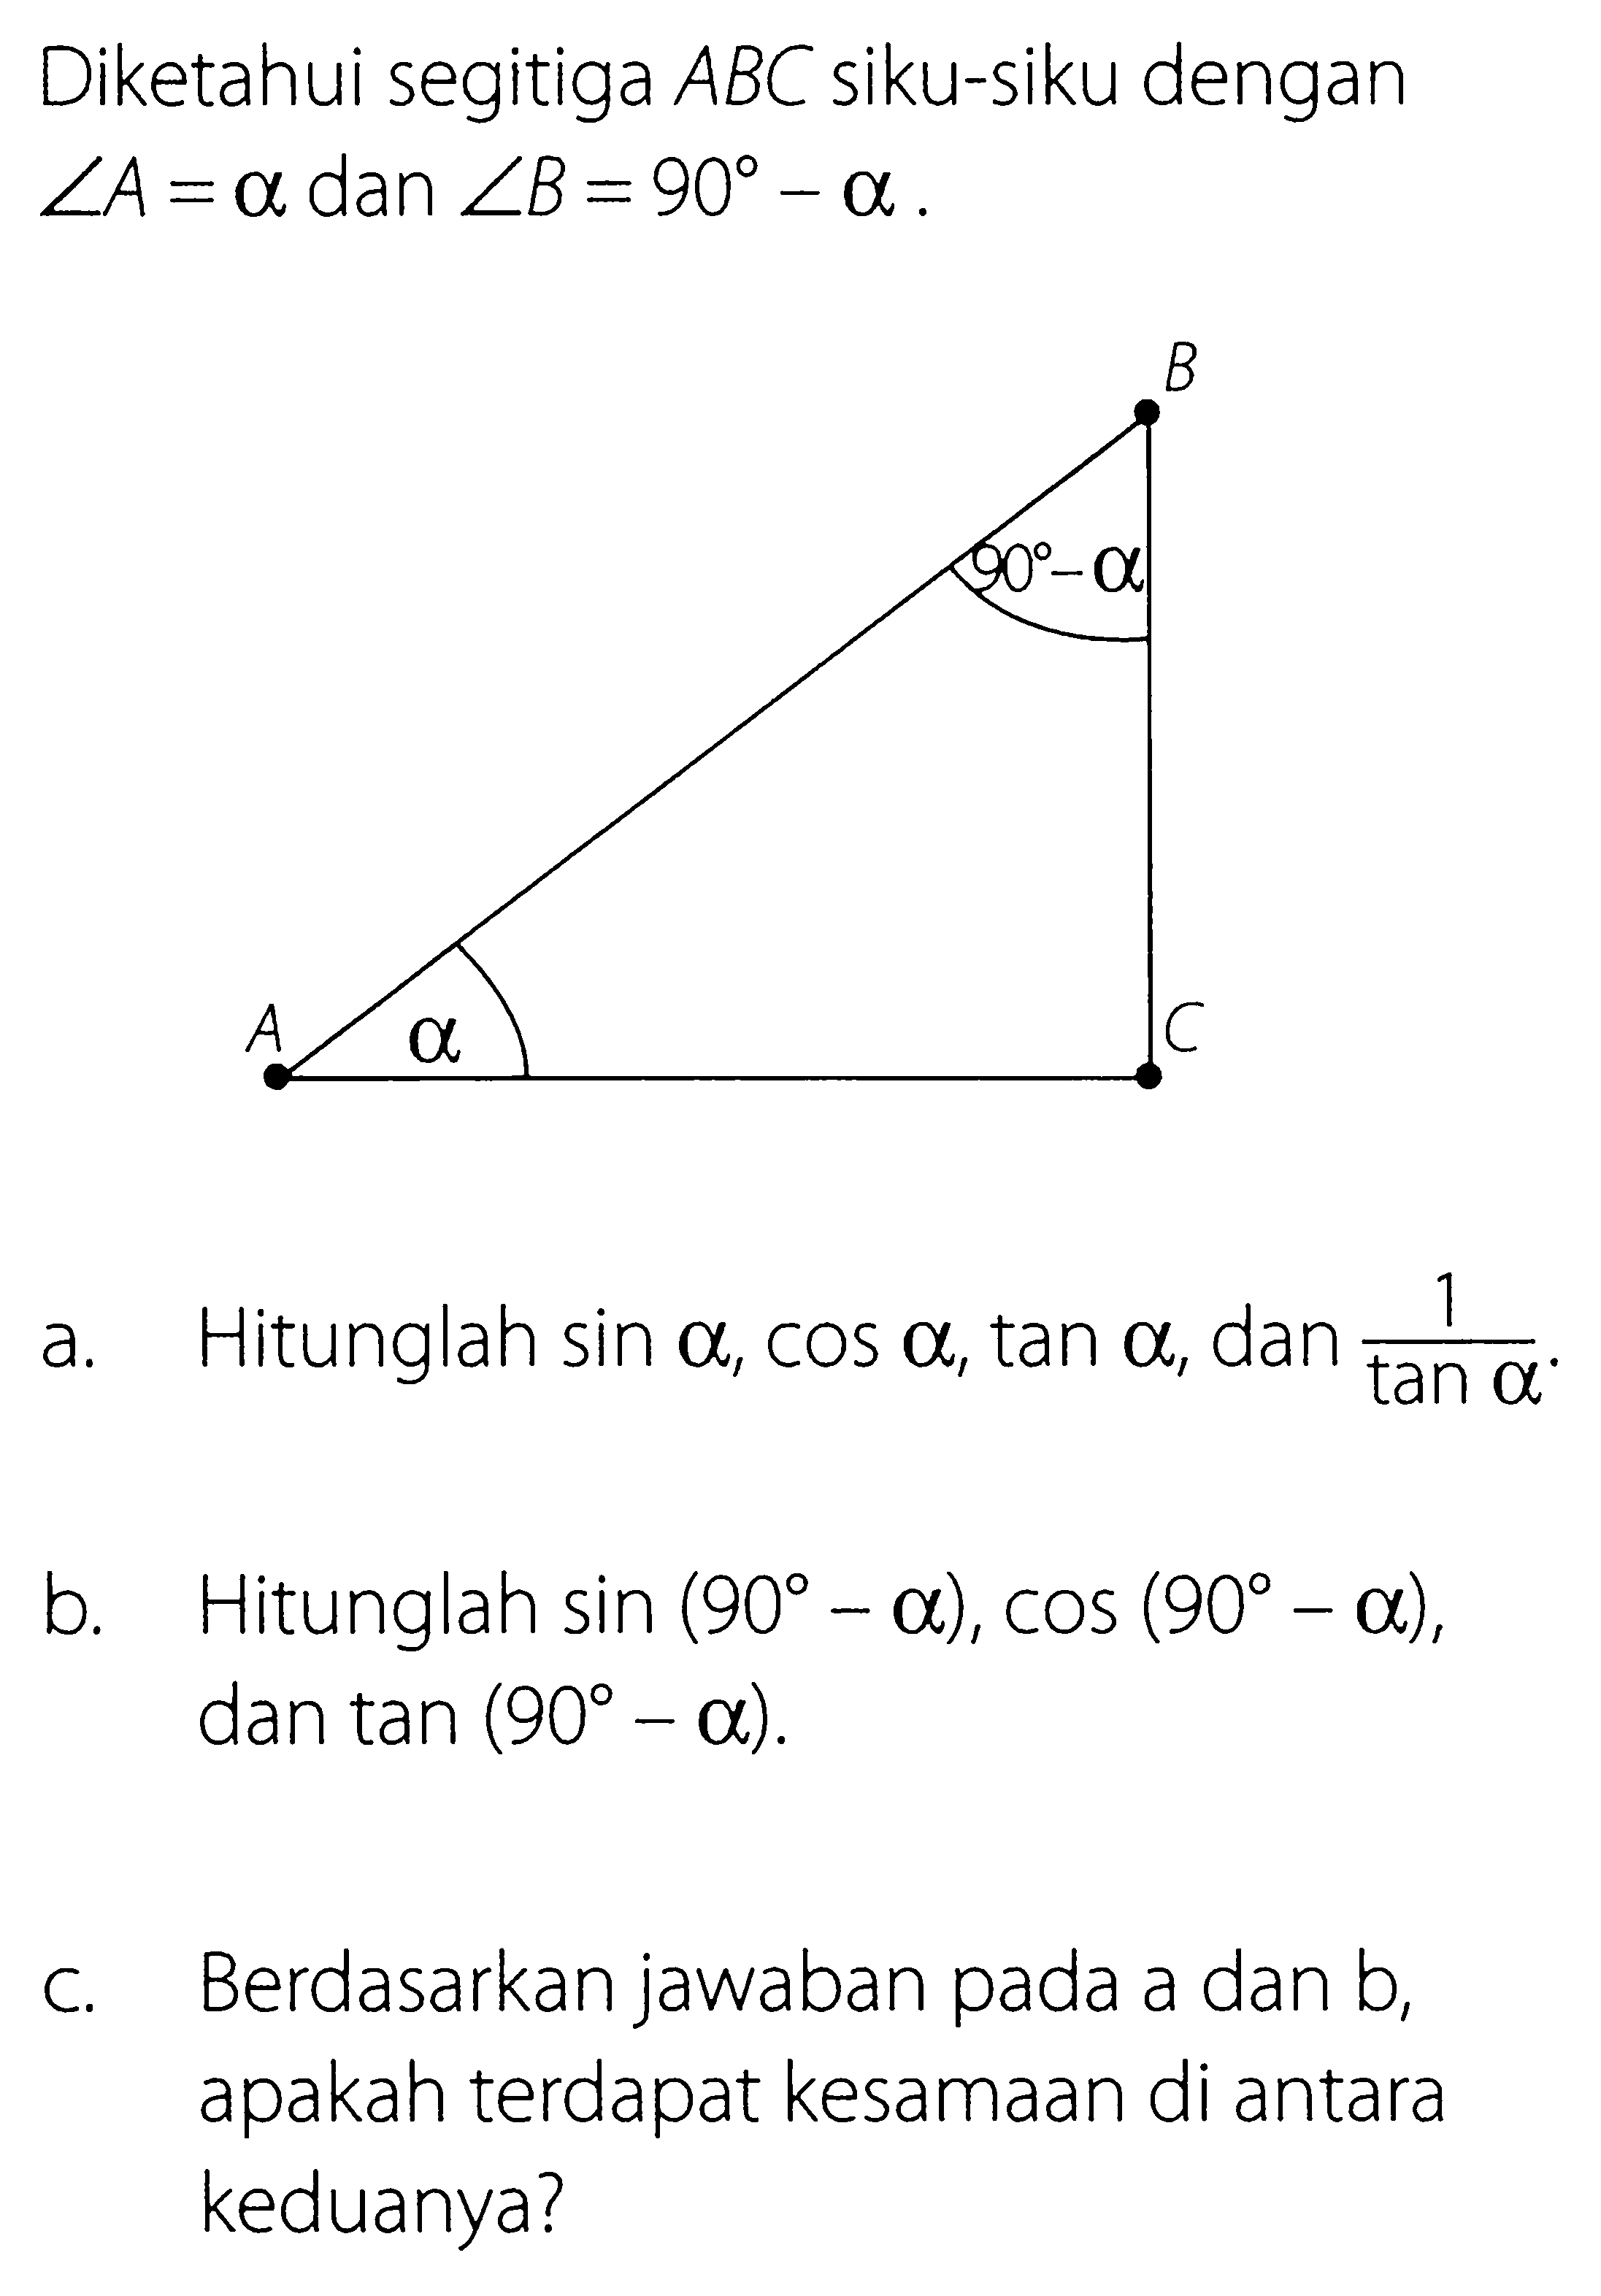 Diketahui segitiga  ABC  siku-siku dengan  sudut A=a dan sudut B=90-a .a. Hitunglah  sin a, cos a, tan a , dan  1/tan a .b. Hitunglah  sin (90-a), cos (90-a) , dan  tan (90-a) .c. Berdasarkan jawaban pada a dan b, apakah terdapat kesamaan di antara keduanya?